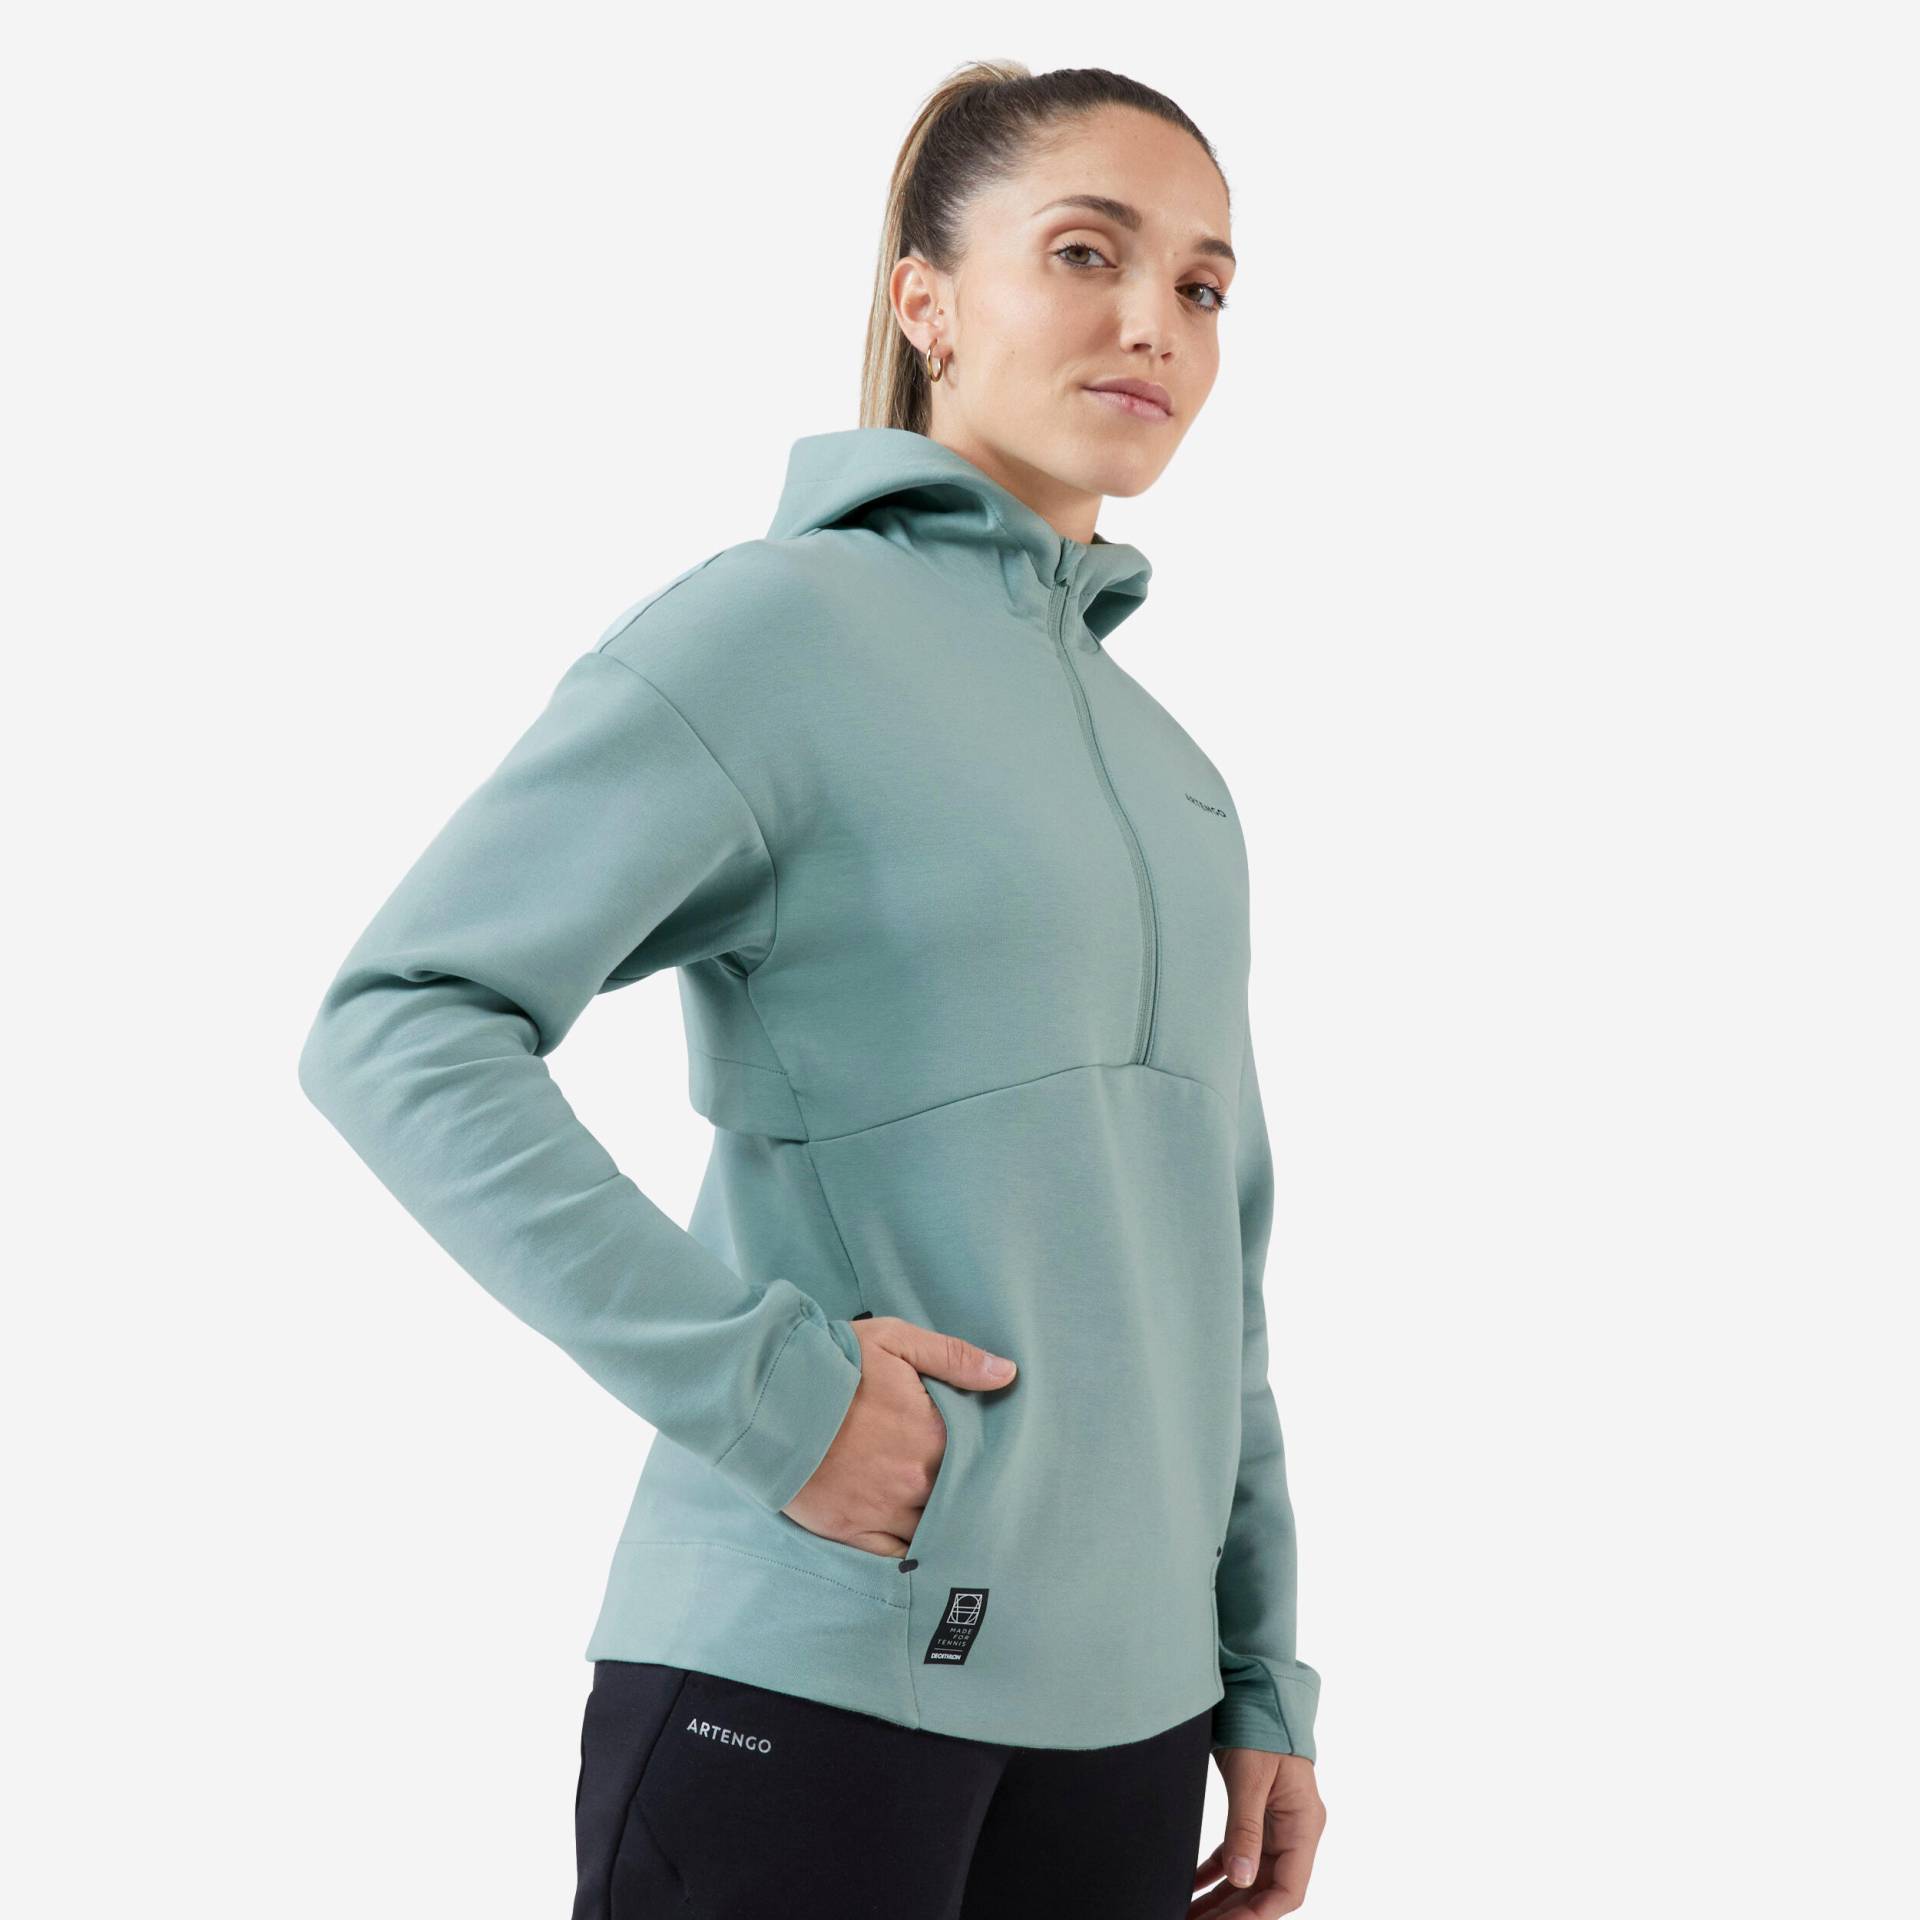 Damen Tennis Sweatshirt Kapuze - Dry 900 graugrün von ARTENGO